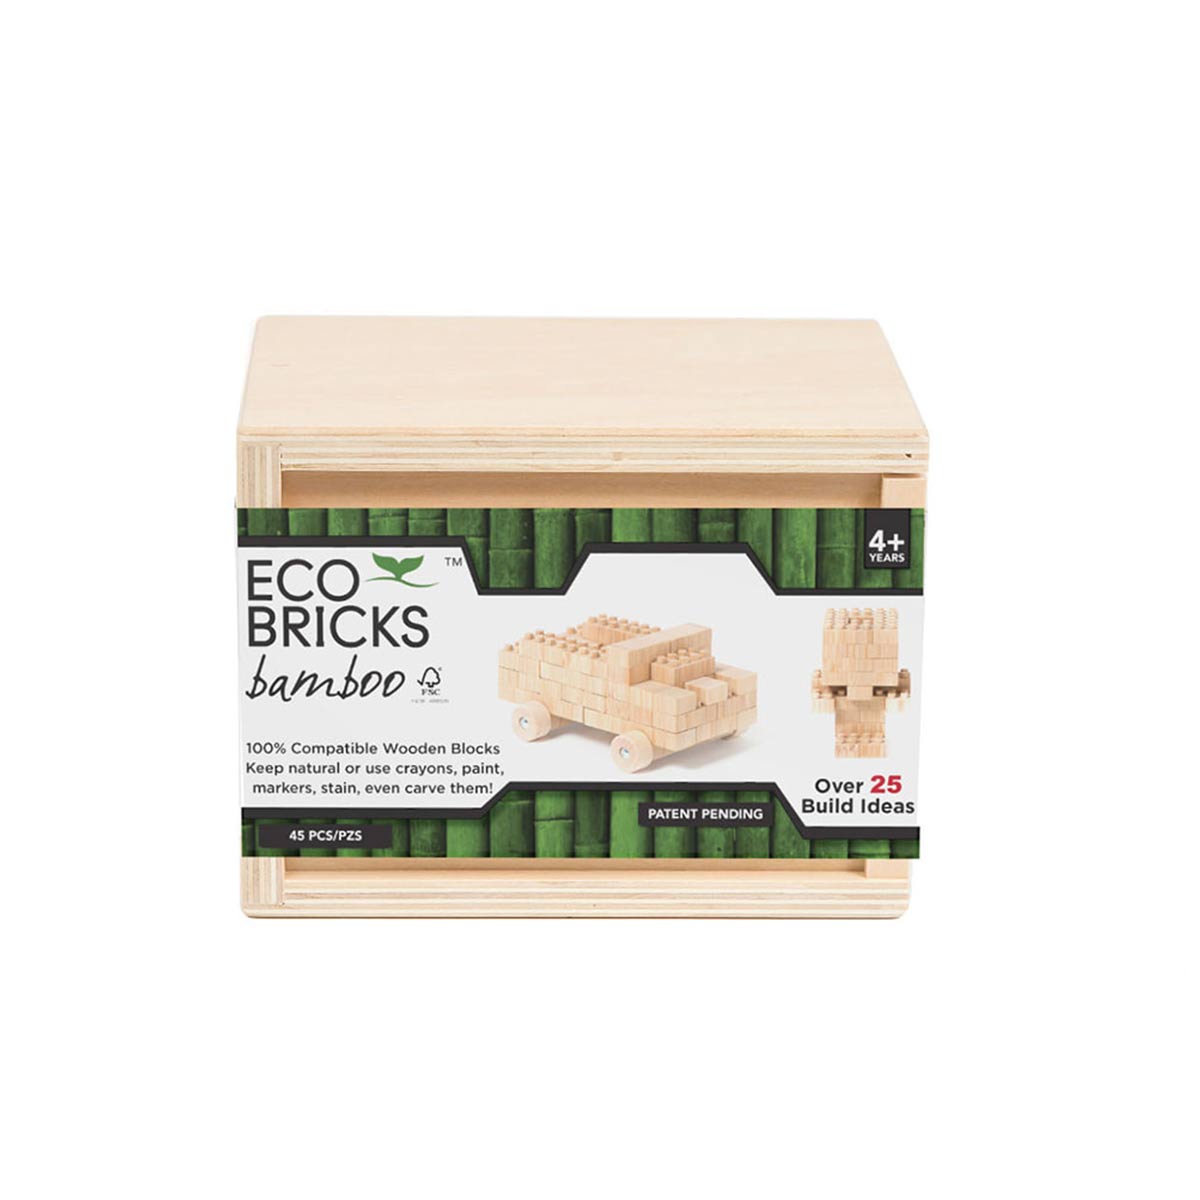 Natural wooden bamboo eco bricks - angus and dudley